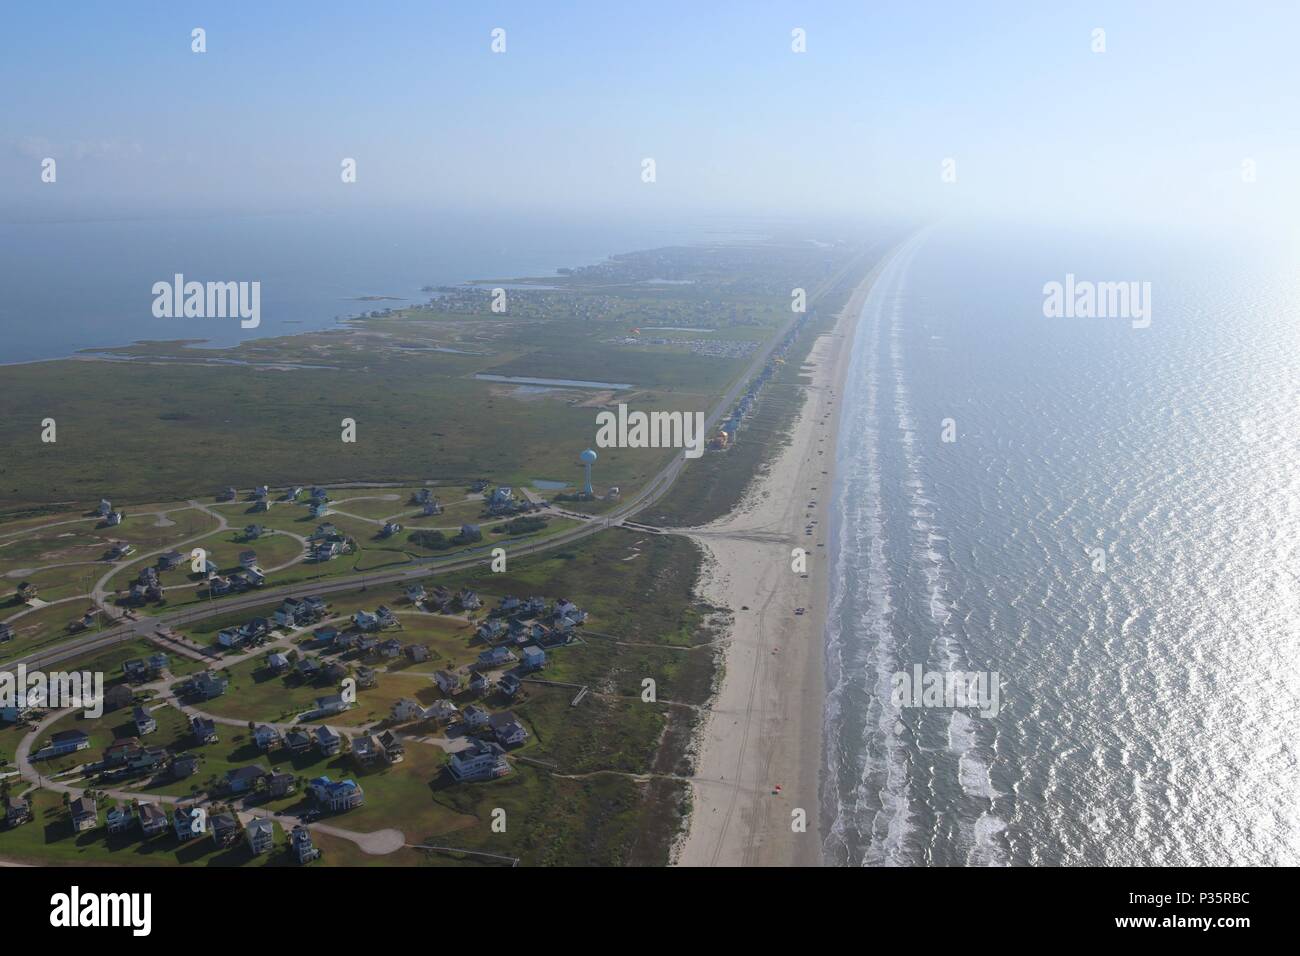 Image aérienne de la côte du golfe du Texas, Galveston Island, USA. Haze en raison de conditions climatiques chaudes. Golfe du Mexique, l'océan, plage, immobilier et voyage Banque D'Images